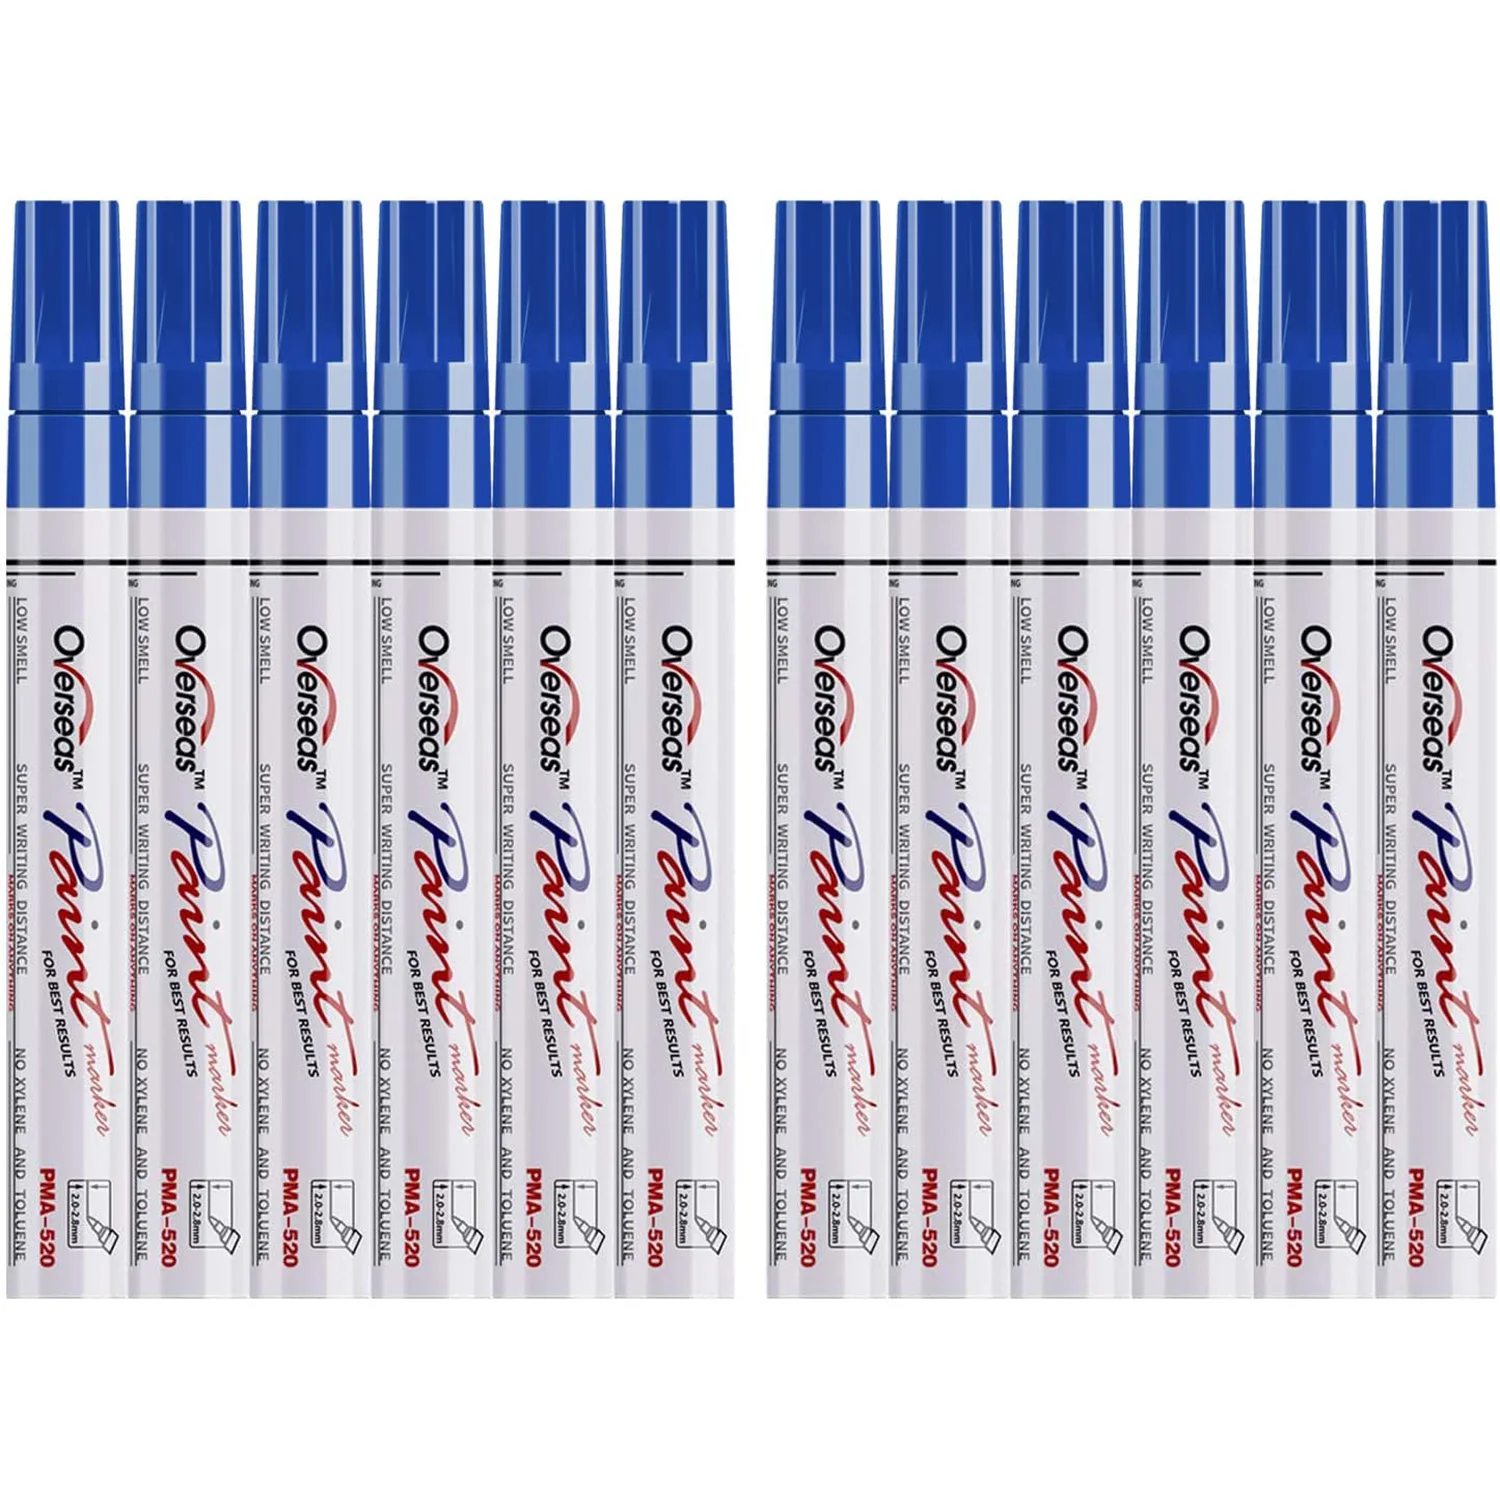 

Краска синяя ручки краски маркеры для краски 12 упаковок водостойкая масляная краска ручка набор быстросохнущая и постоянная, маркеры для краски камнями